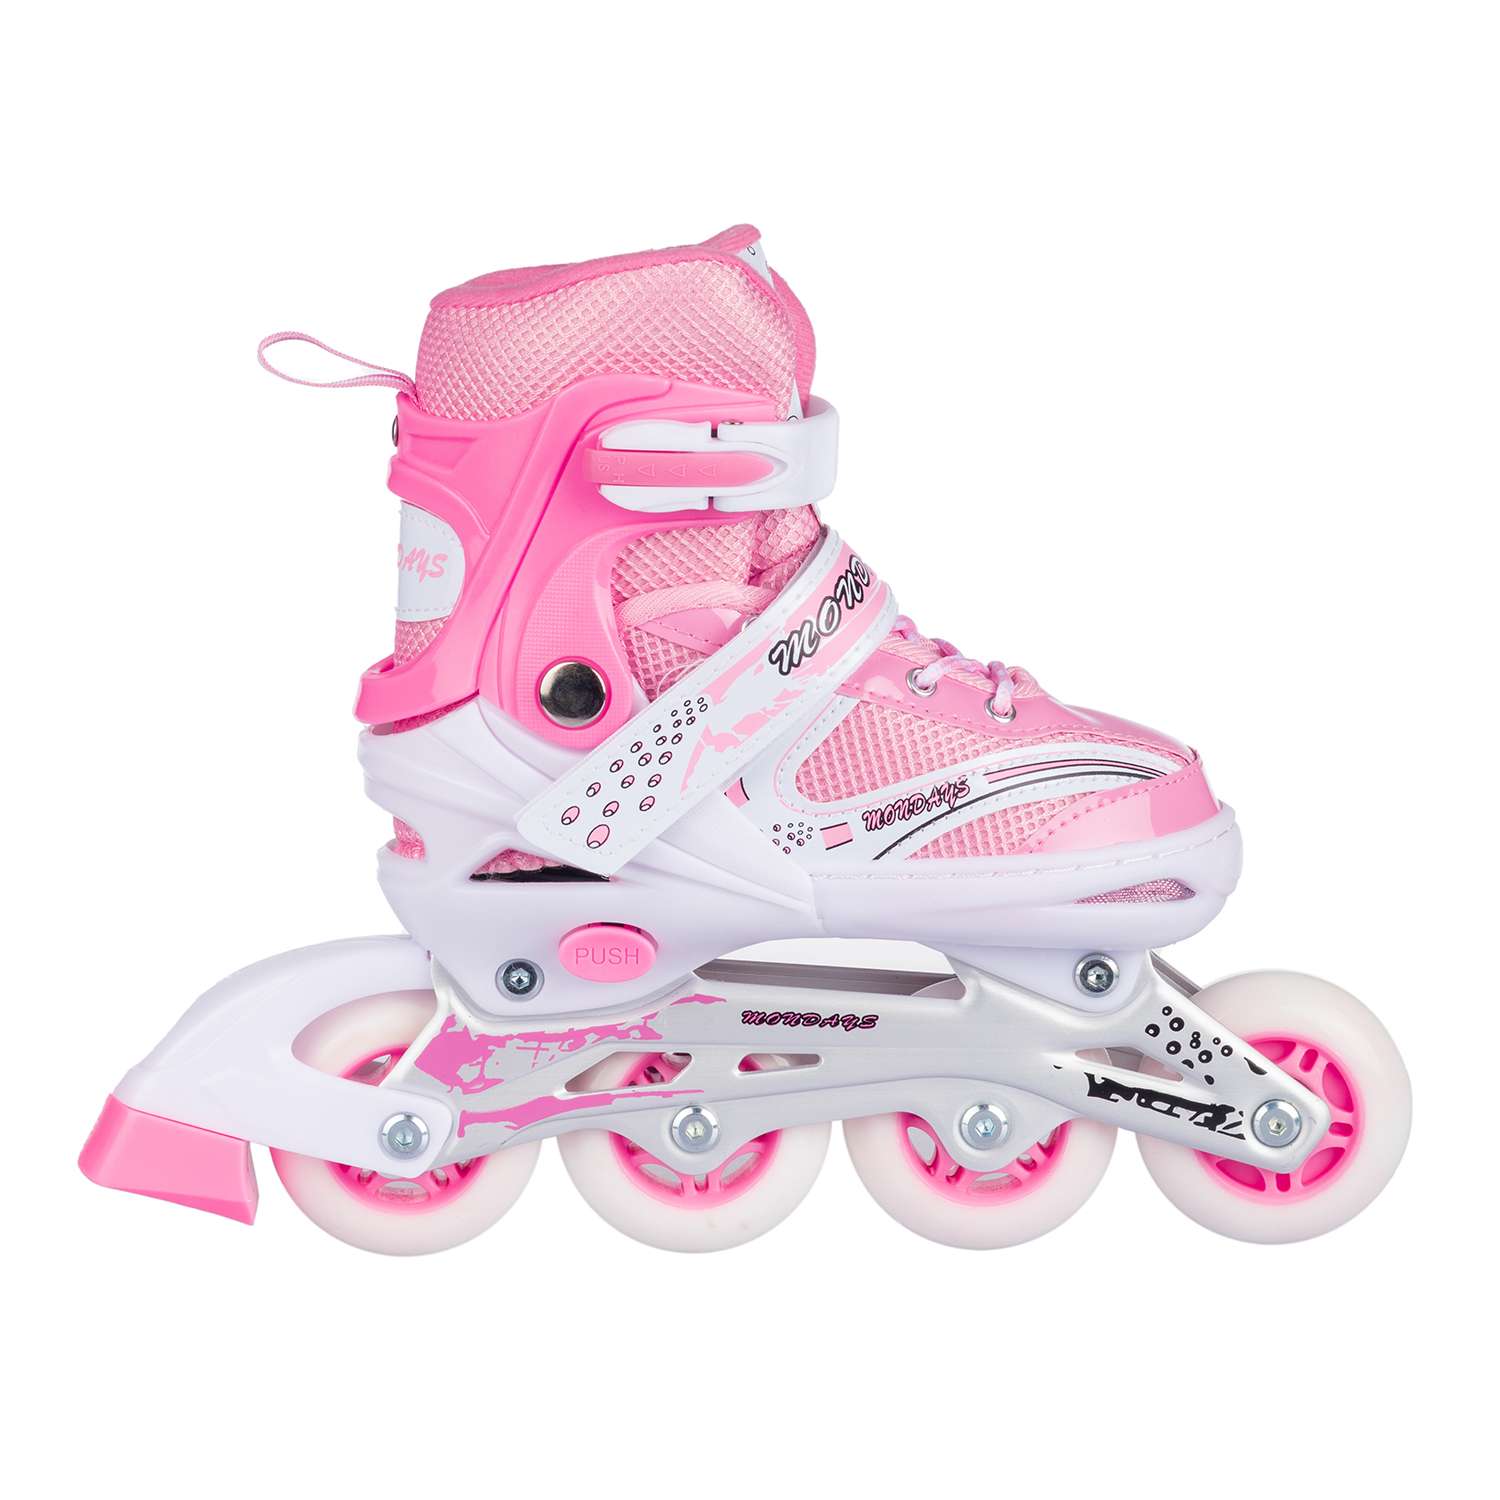 Роликовые коньки BABY STYLE розовые раздвижные размер с 28 по 31S светящиеся колеса - фото 5